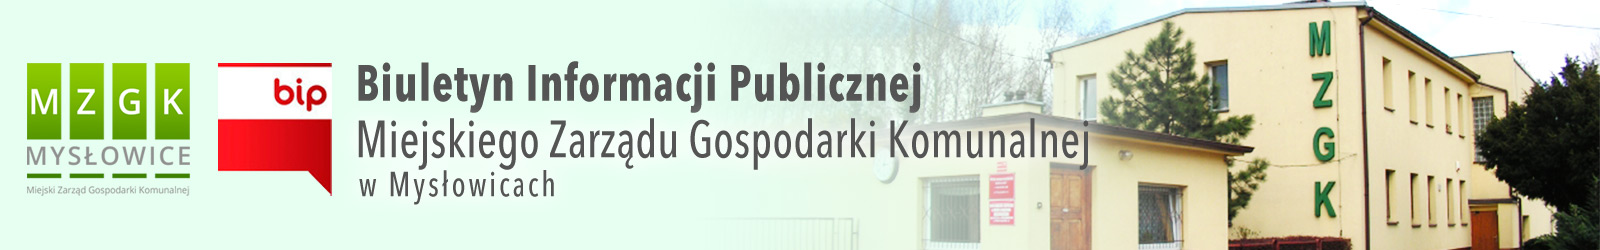 BIP Miejskiego Zarządu Gospodarki Komunalnej w Mysłowicach